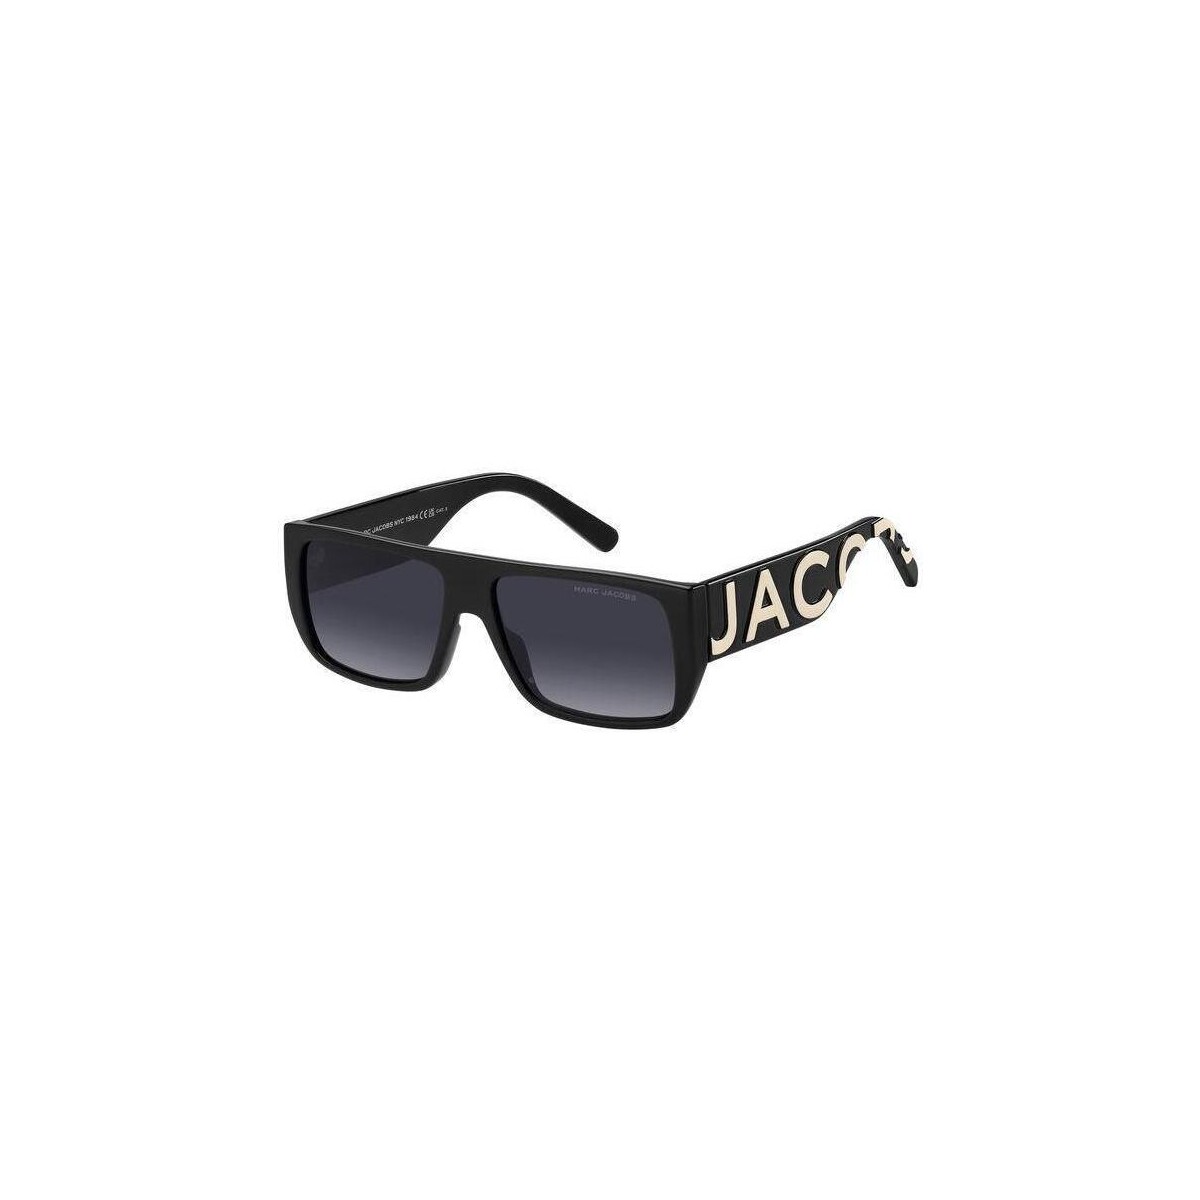 Orologi & Gioielli Occhiali da sole Marc Jacobs MARC LOGO 096/S Occhiali da sole, Nero/Grigio, 57 mm Nero